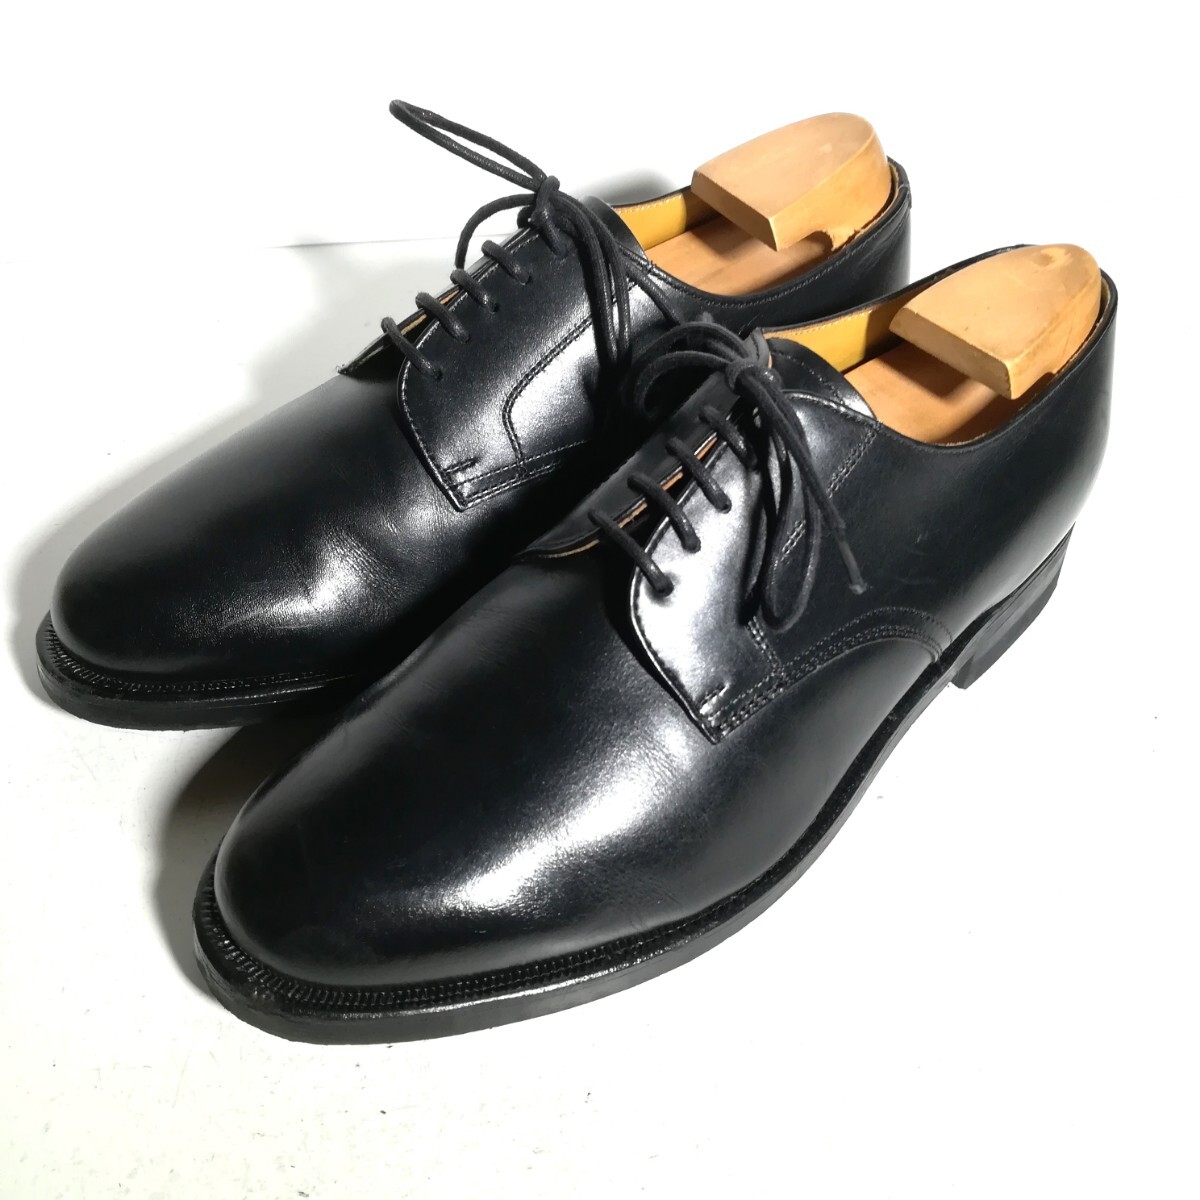 ★リーガル REGAL★ JH21 プレーントゥ 24EEE 黒 ドレスシューズ ビジネス 革靴 紳士靴 の画像1